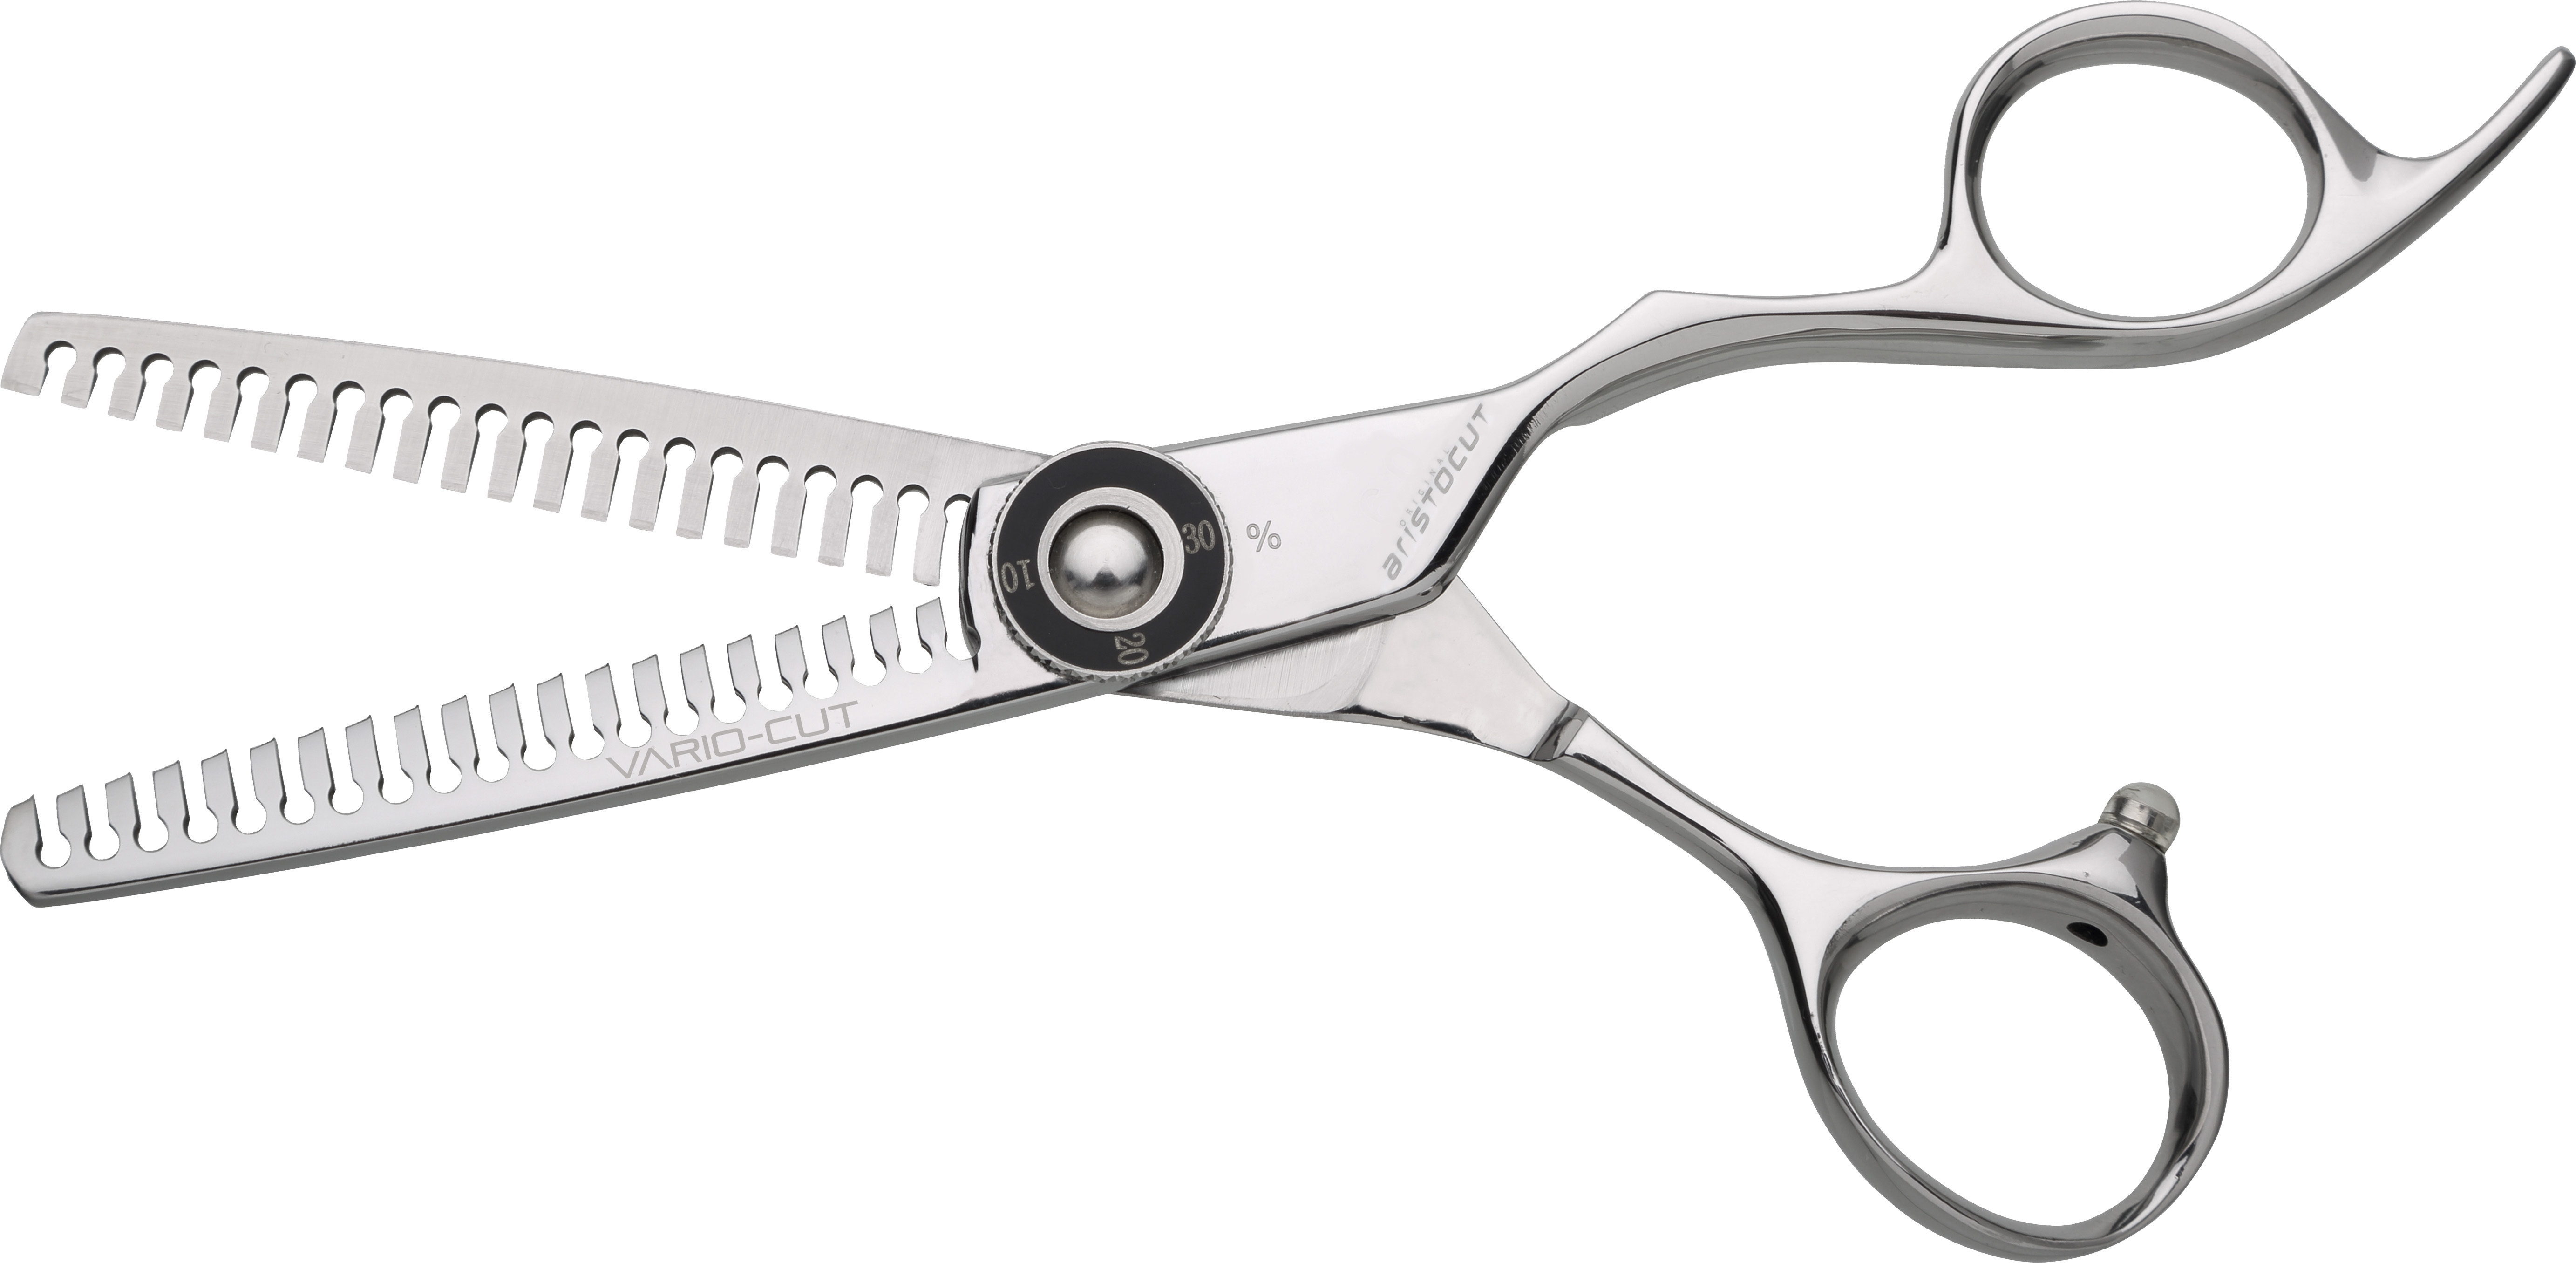 VARIO-CUT Effiliation scissors